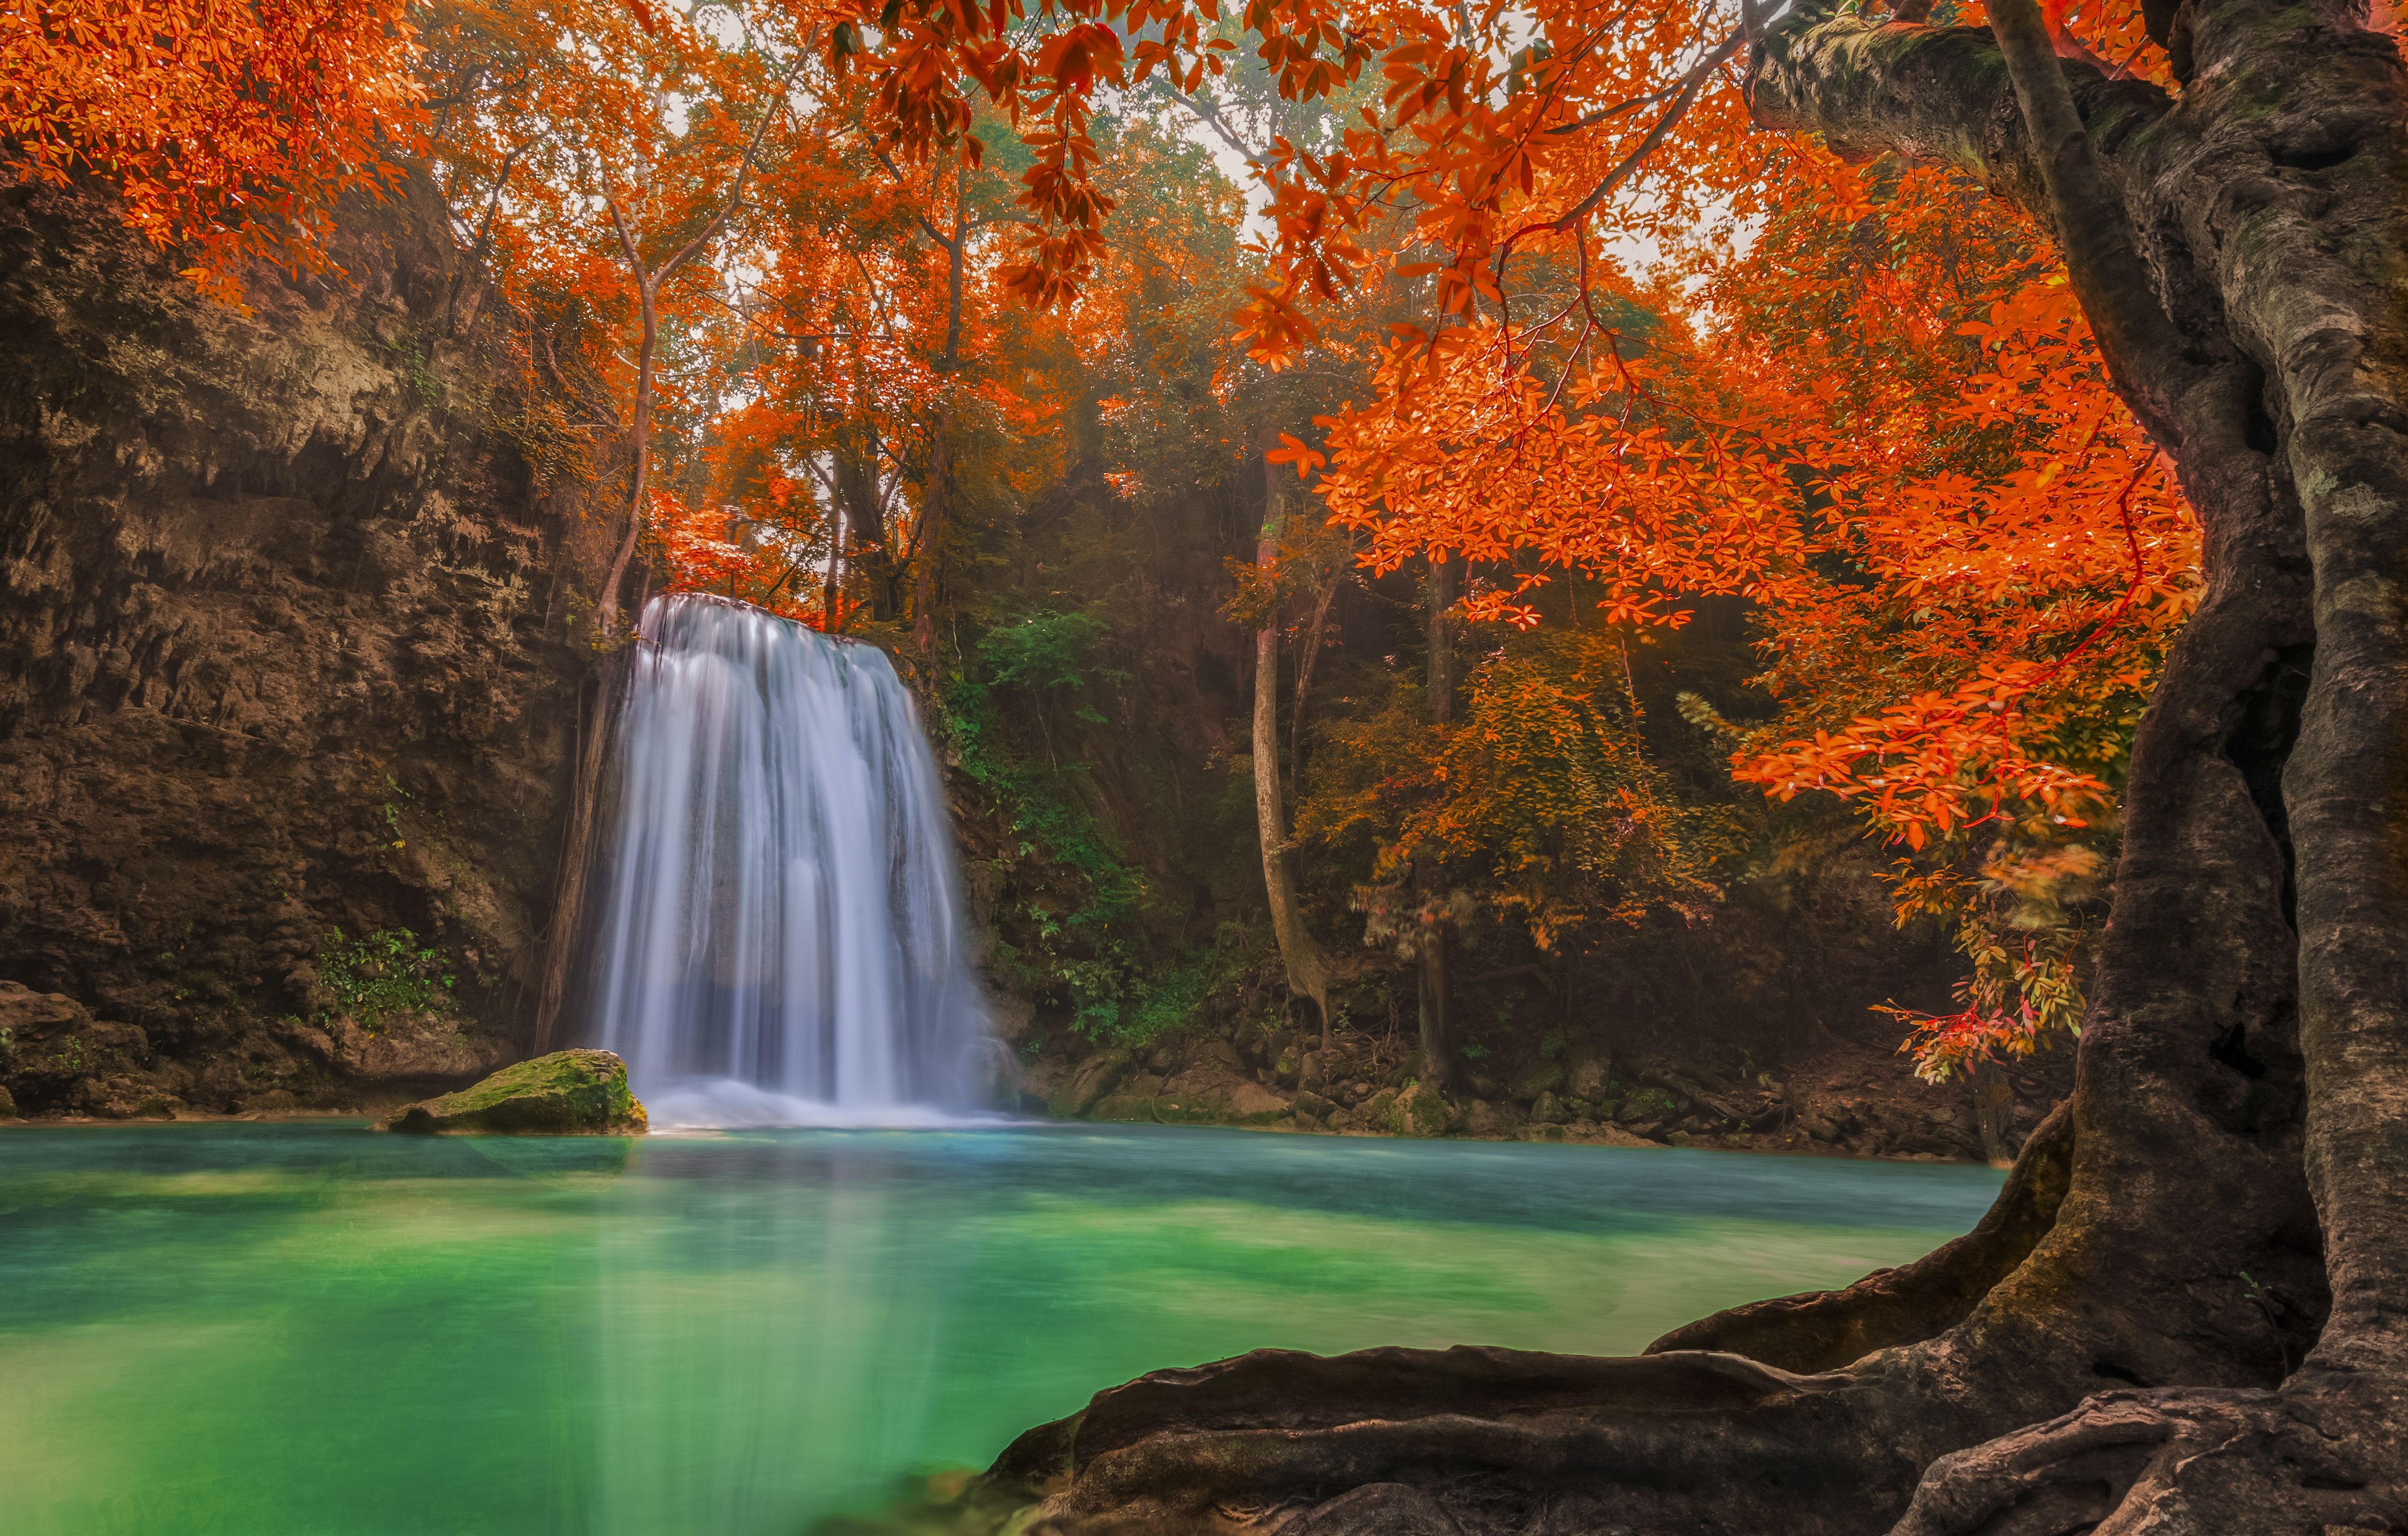 Обои красивые водопады. Манзара водопад. Осенний водопад. Пейзаж водопад. Красивый водопад в лесу.